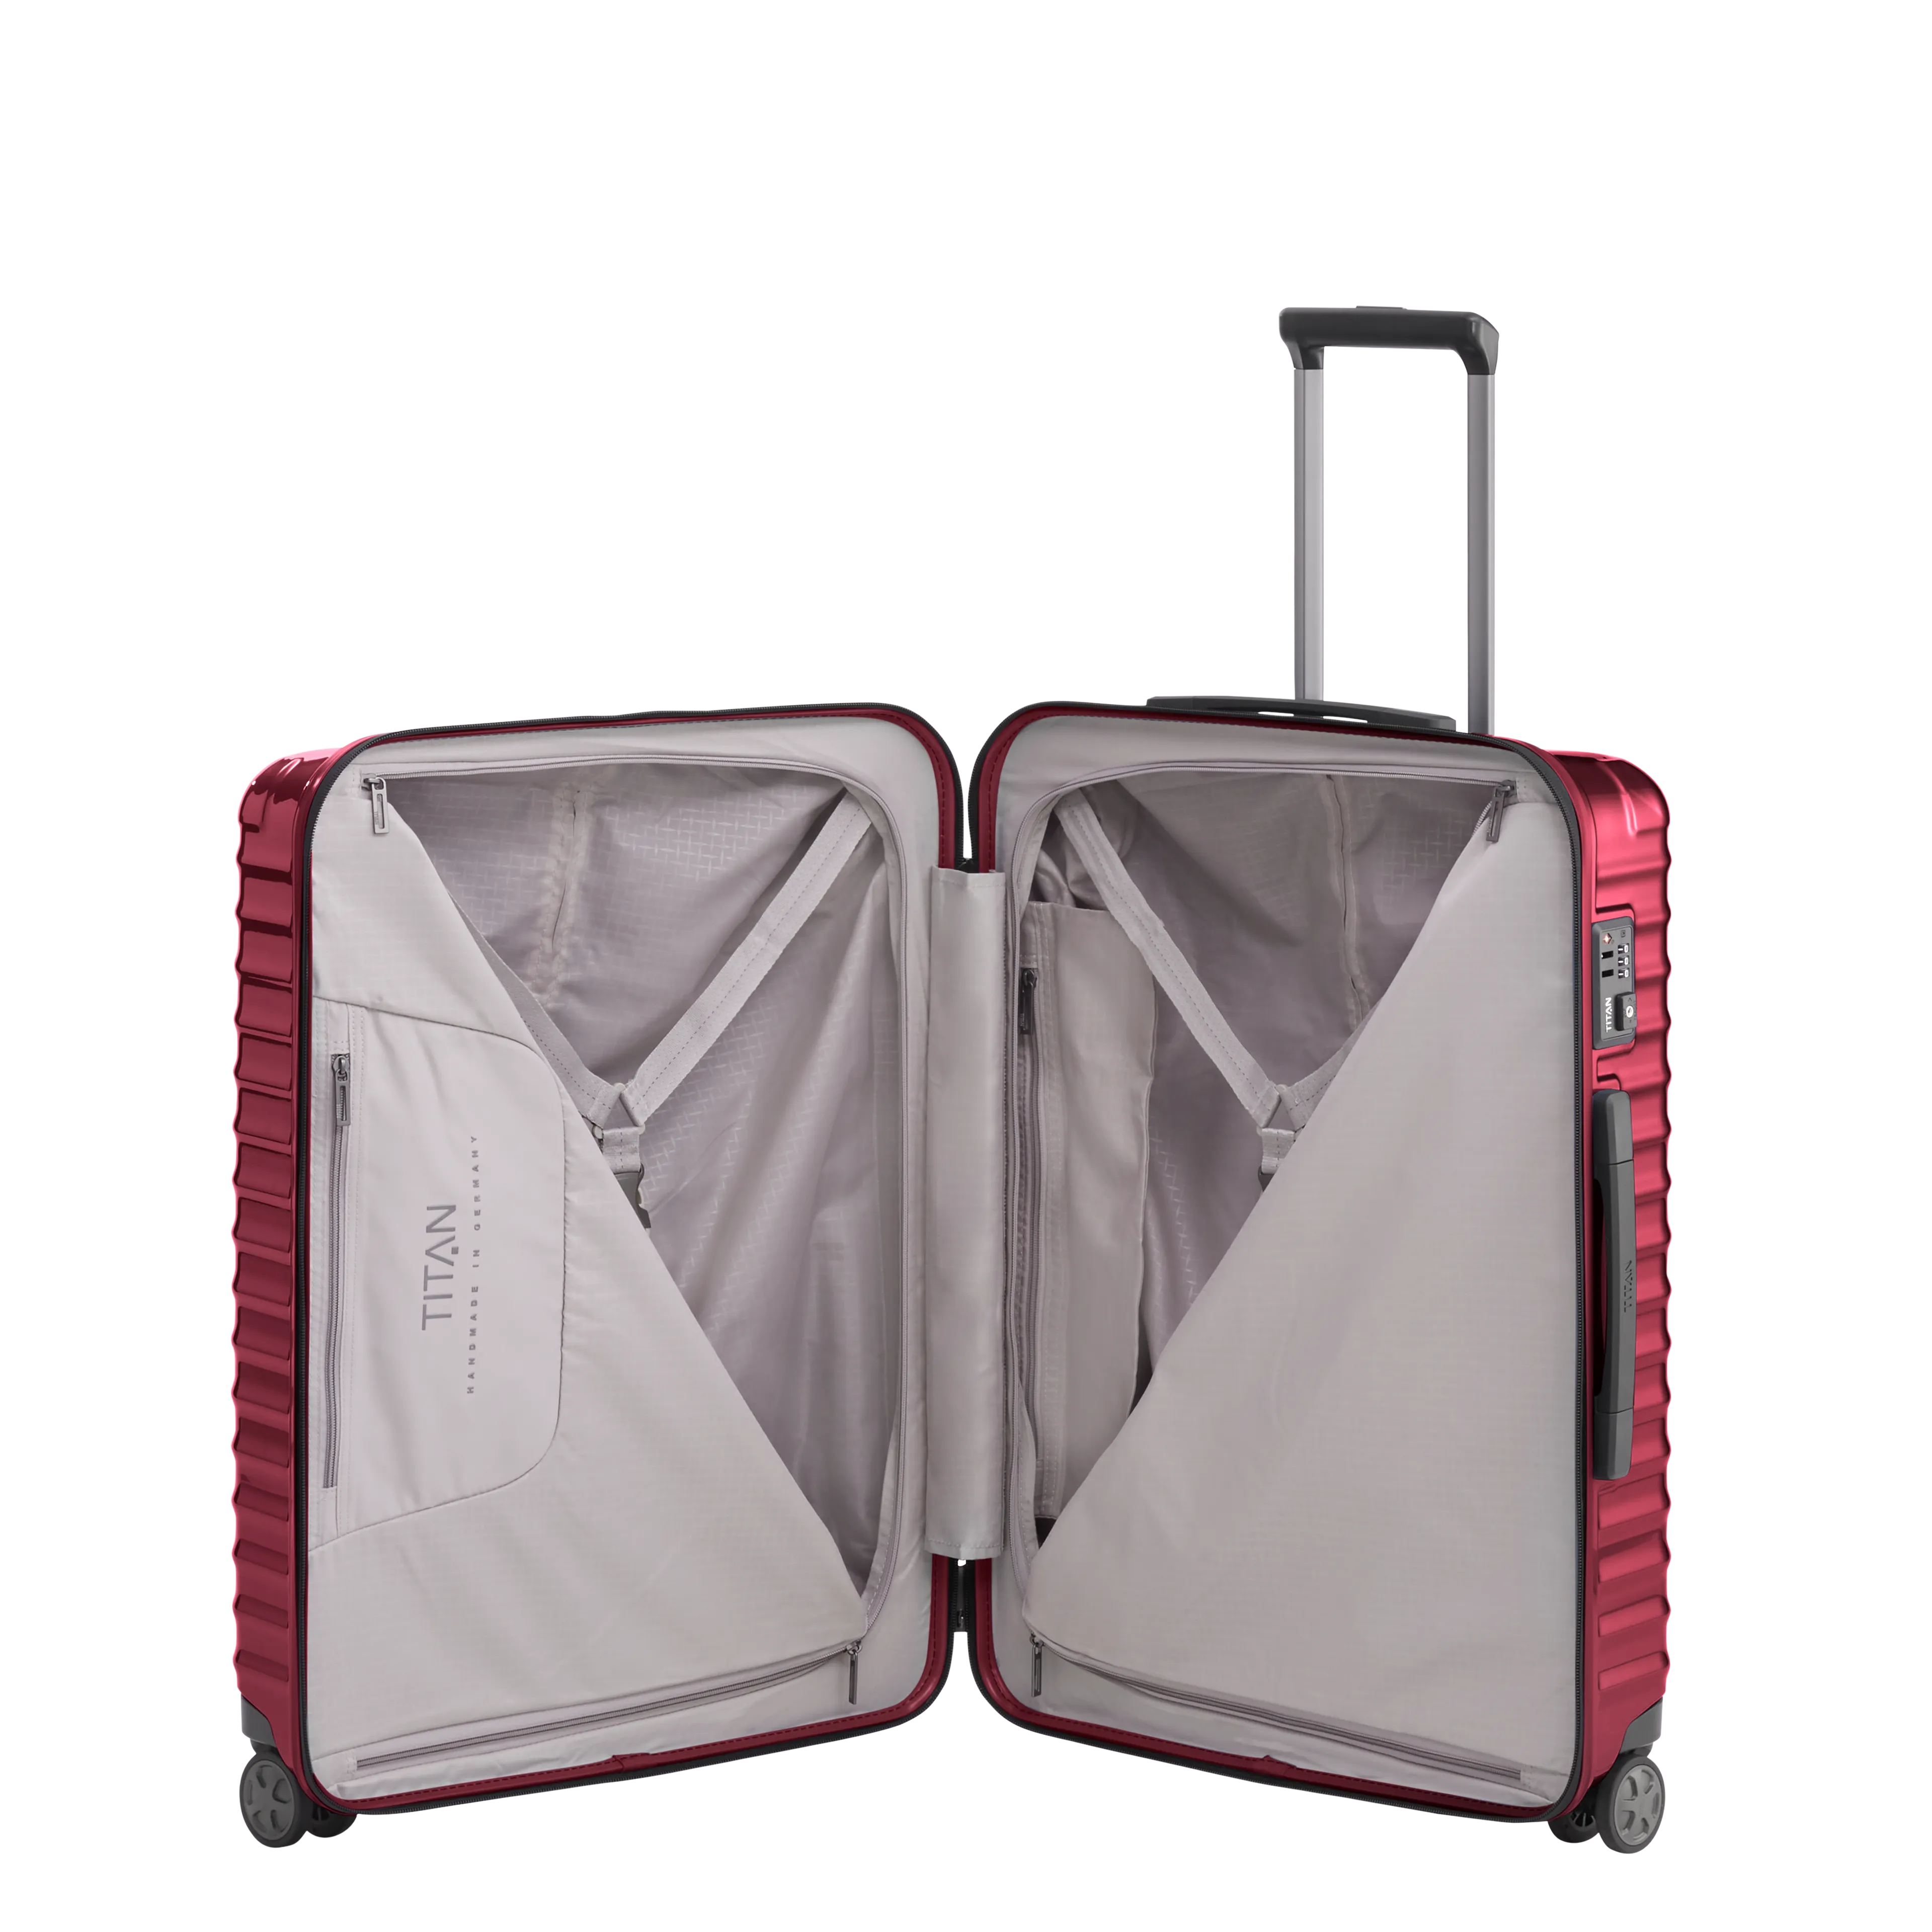 Ein TITAN Koffer der Serie LITRON Innenansicht in rot Größe M 69cm